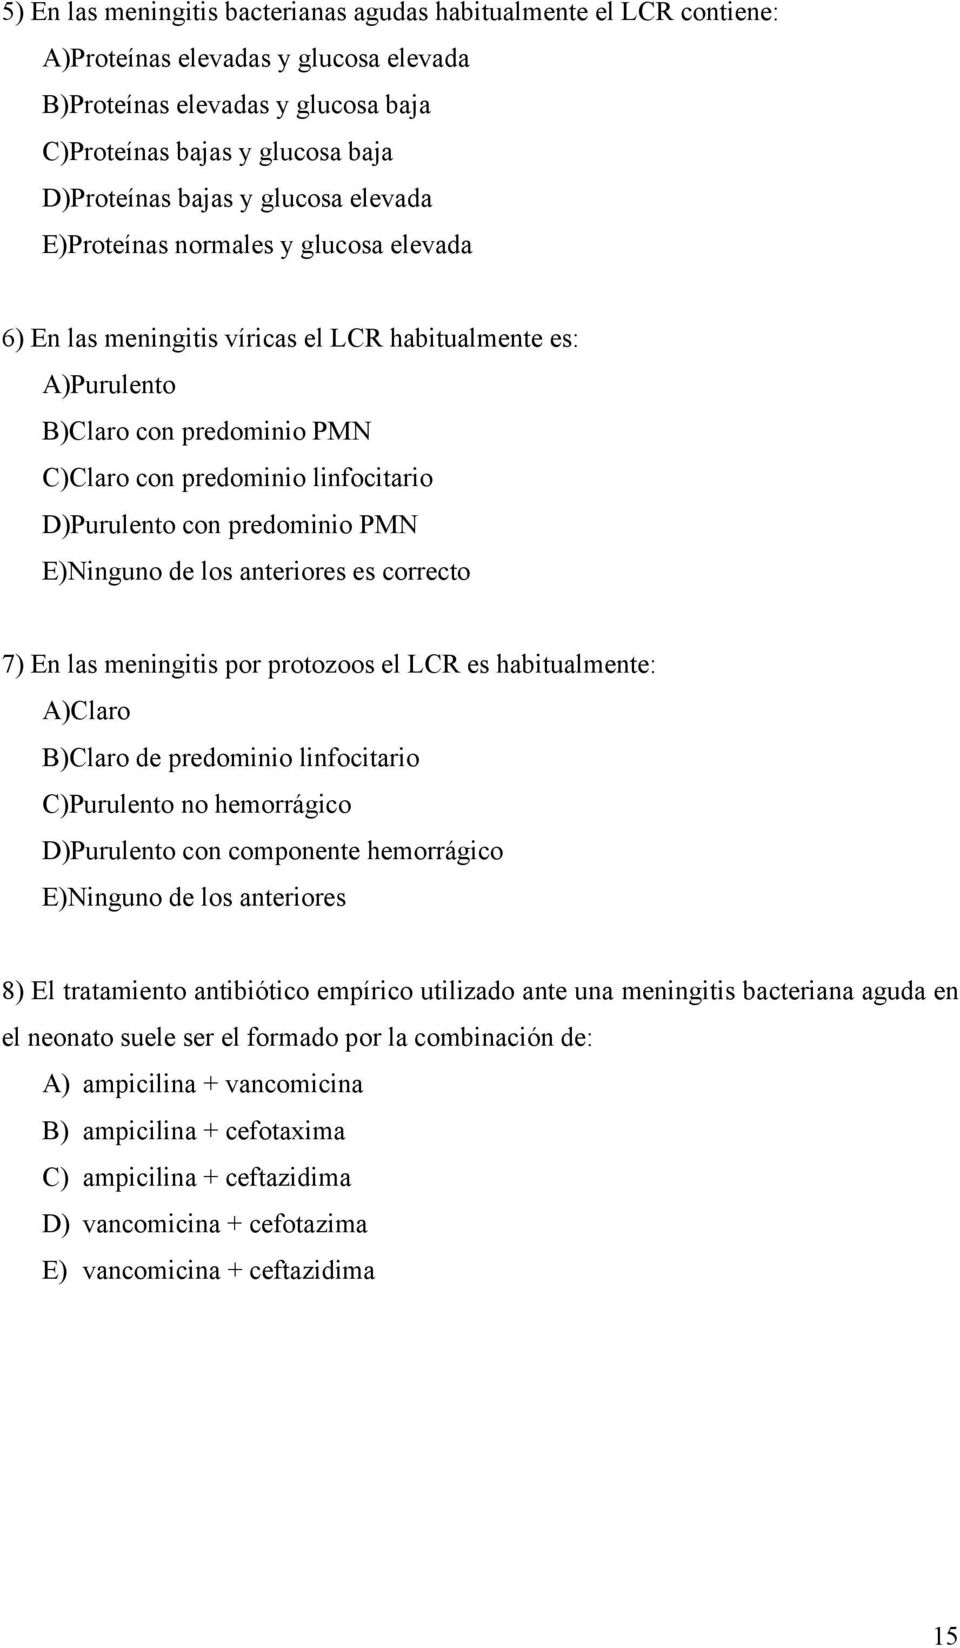 predominio PMN E)Ninguno de los anteriores es correcto 7) En las meningitis por protozoos el LCR es habitualmente: A)Claro B)Claro de predominio linfocitario C)Purulento no hemorrágico D)Purulento